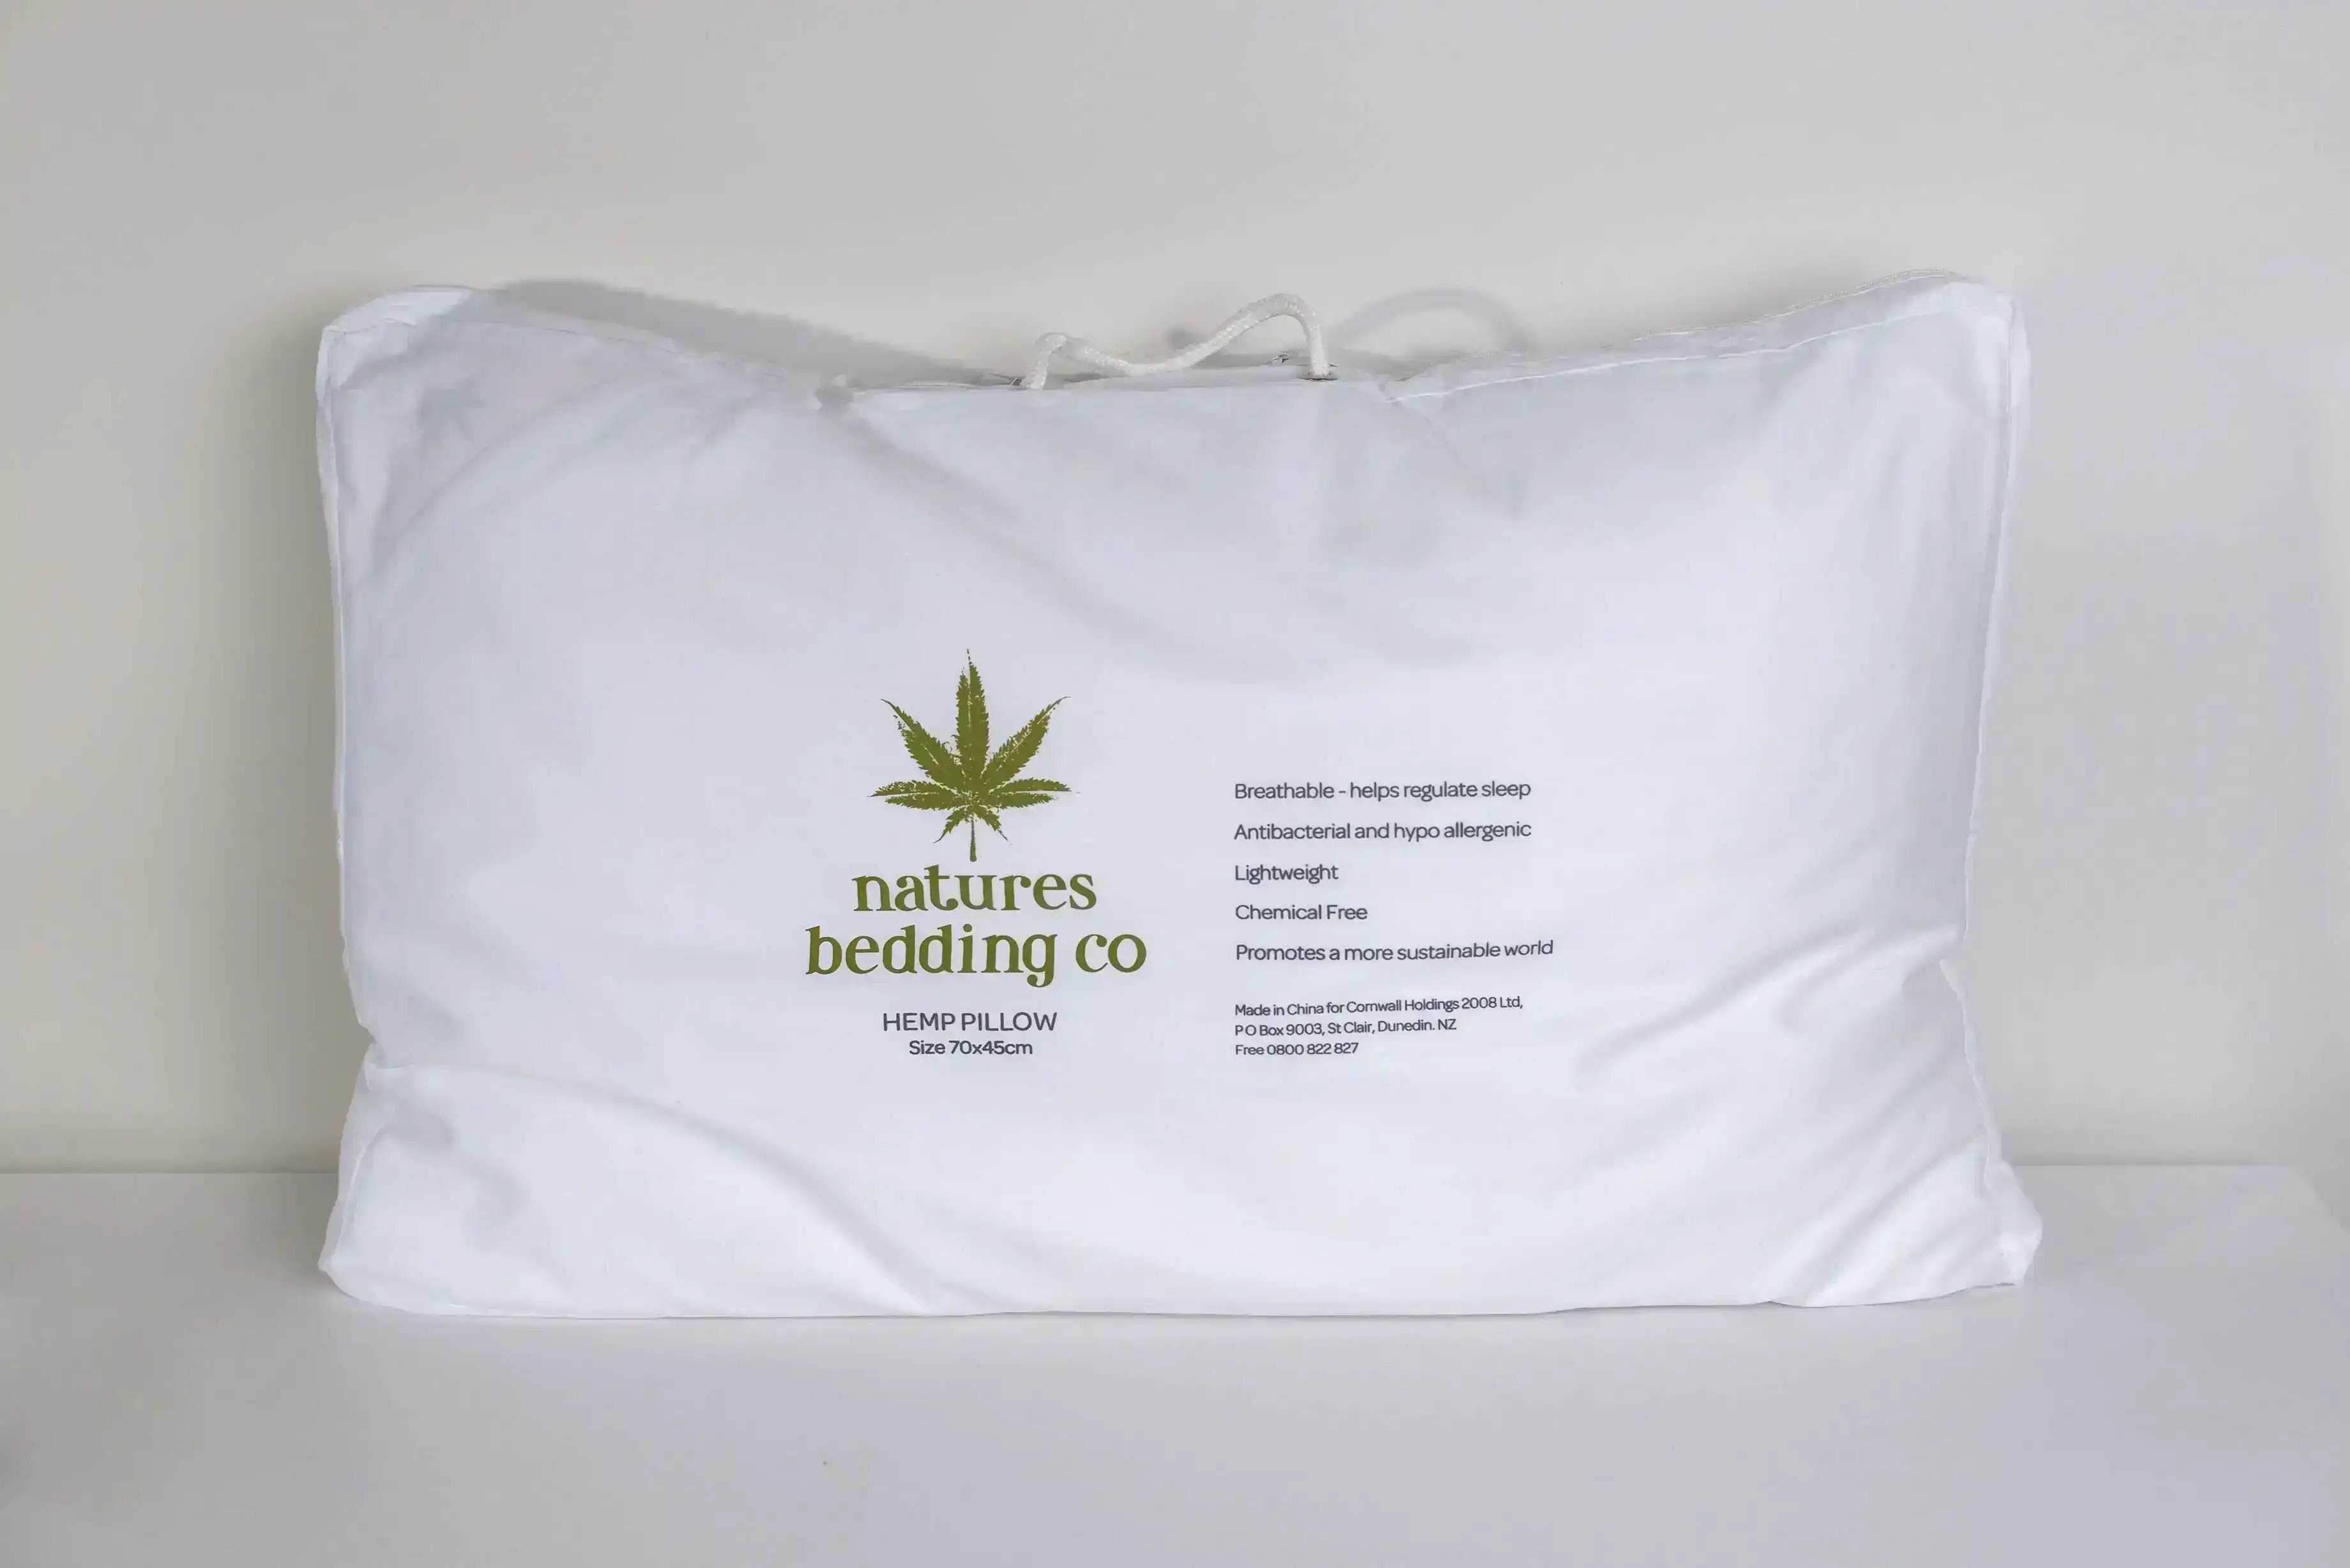 Natures Bedding Co Hemp Pillow - Standard Size